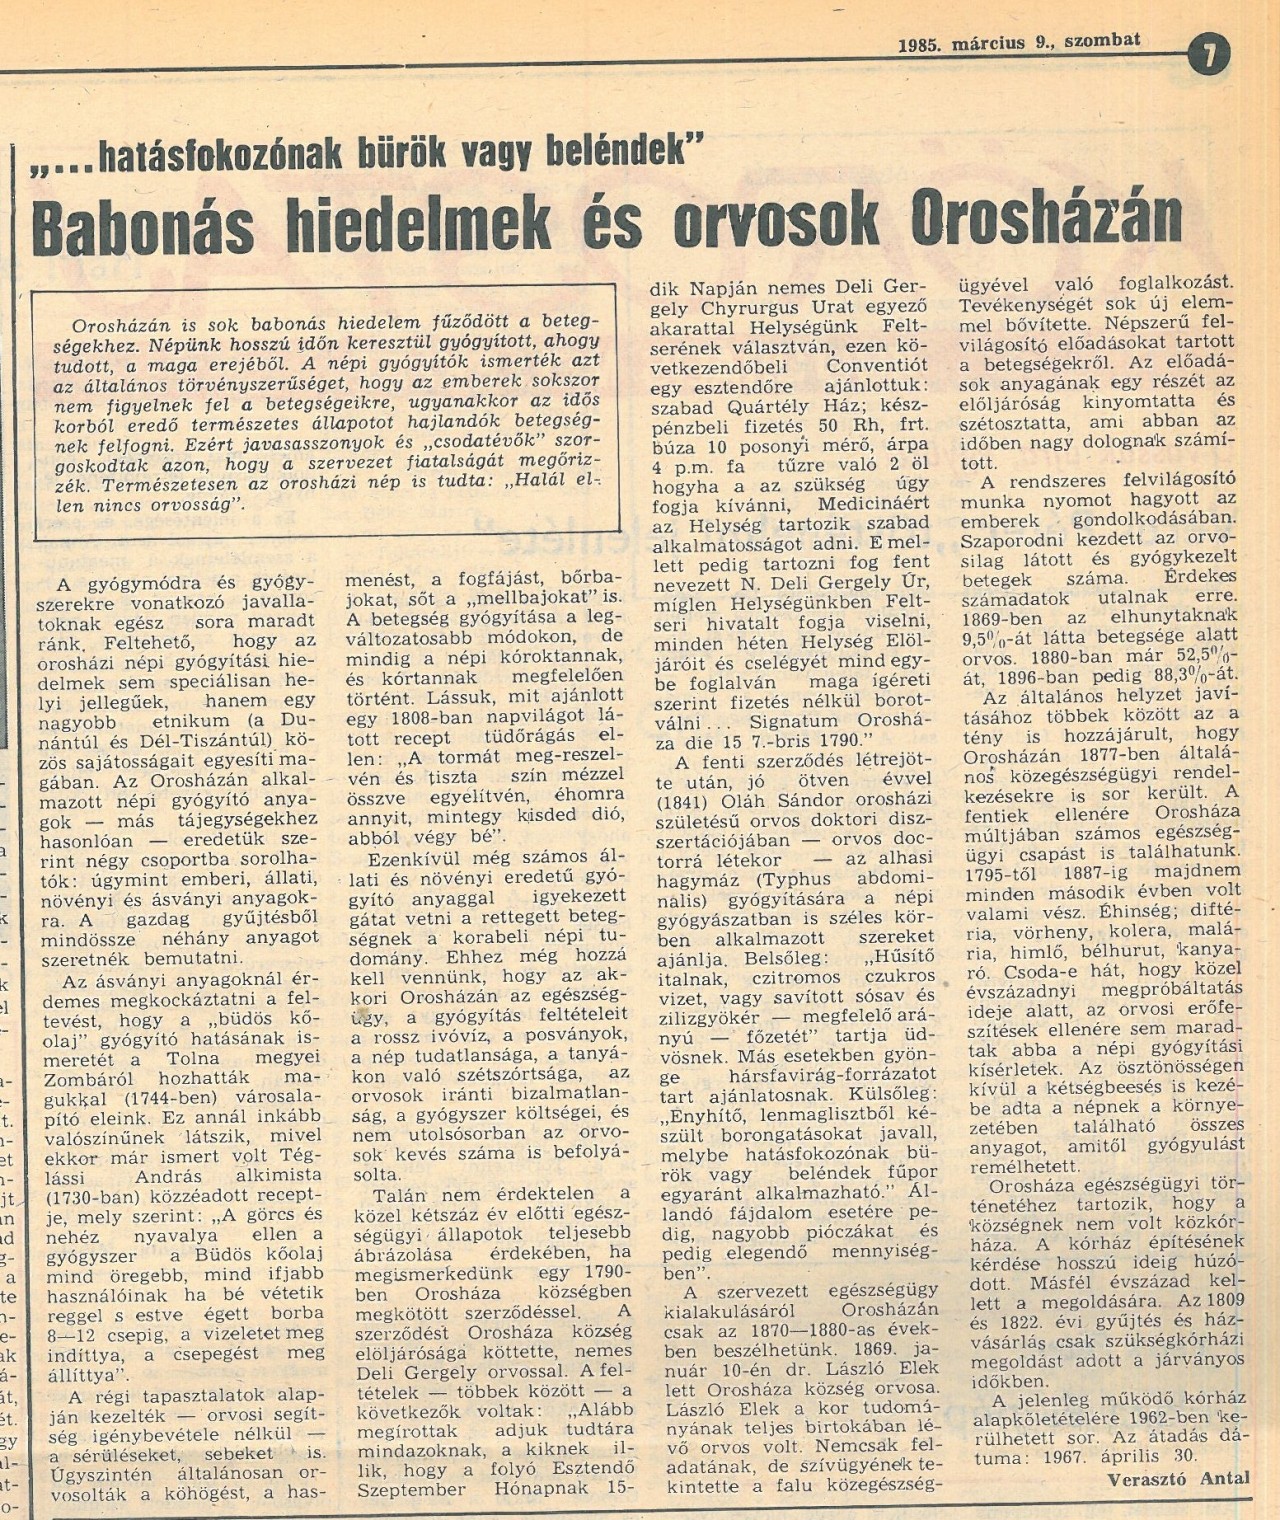 Orosháza egészségügyi történetéről.Békés Megyei Népújság, 1985. március 9.